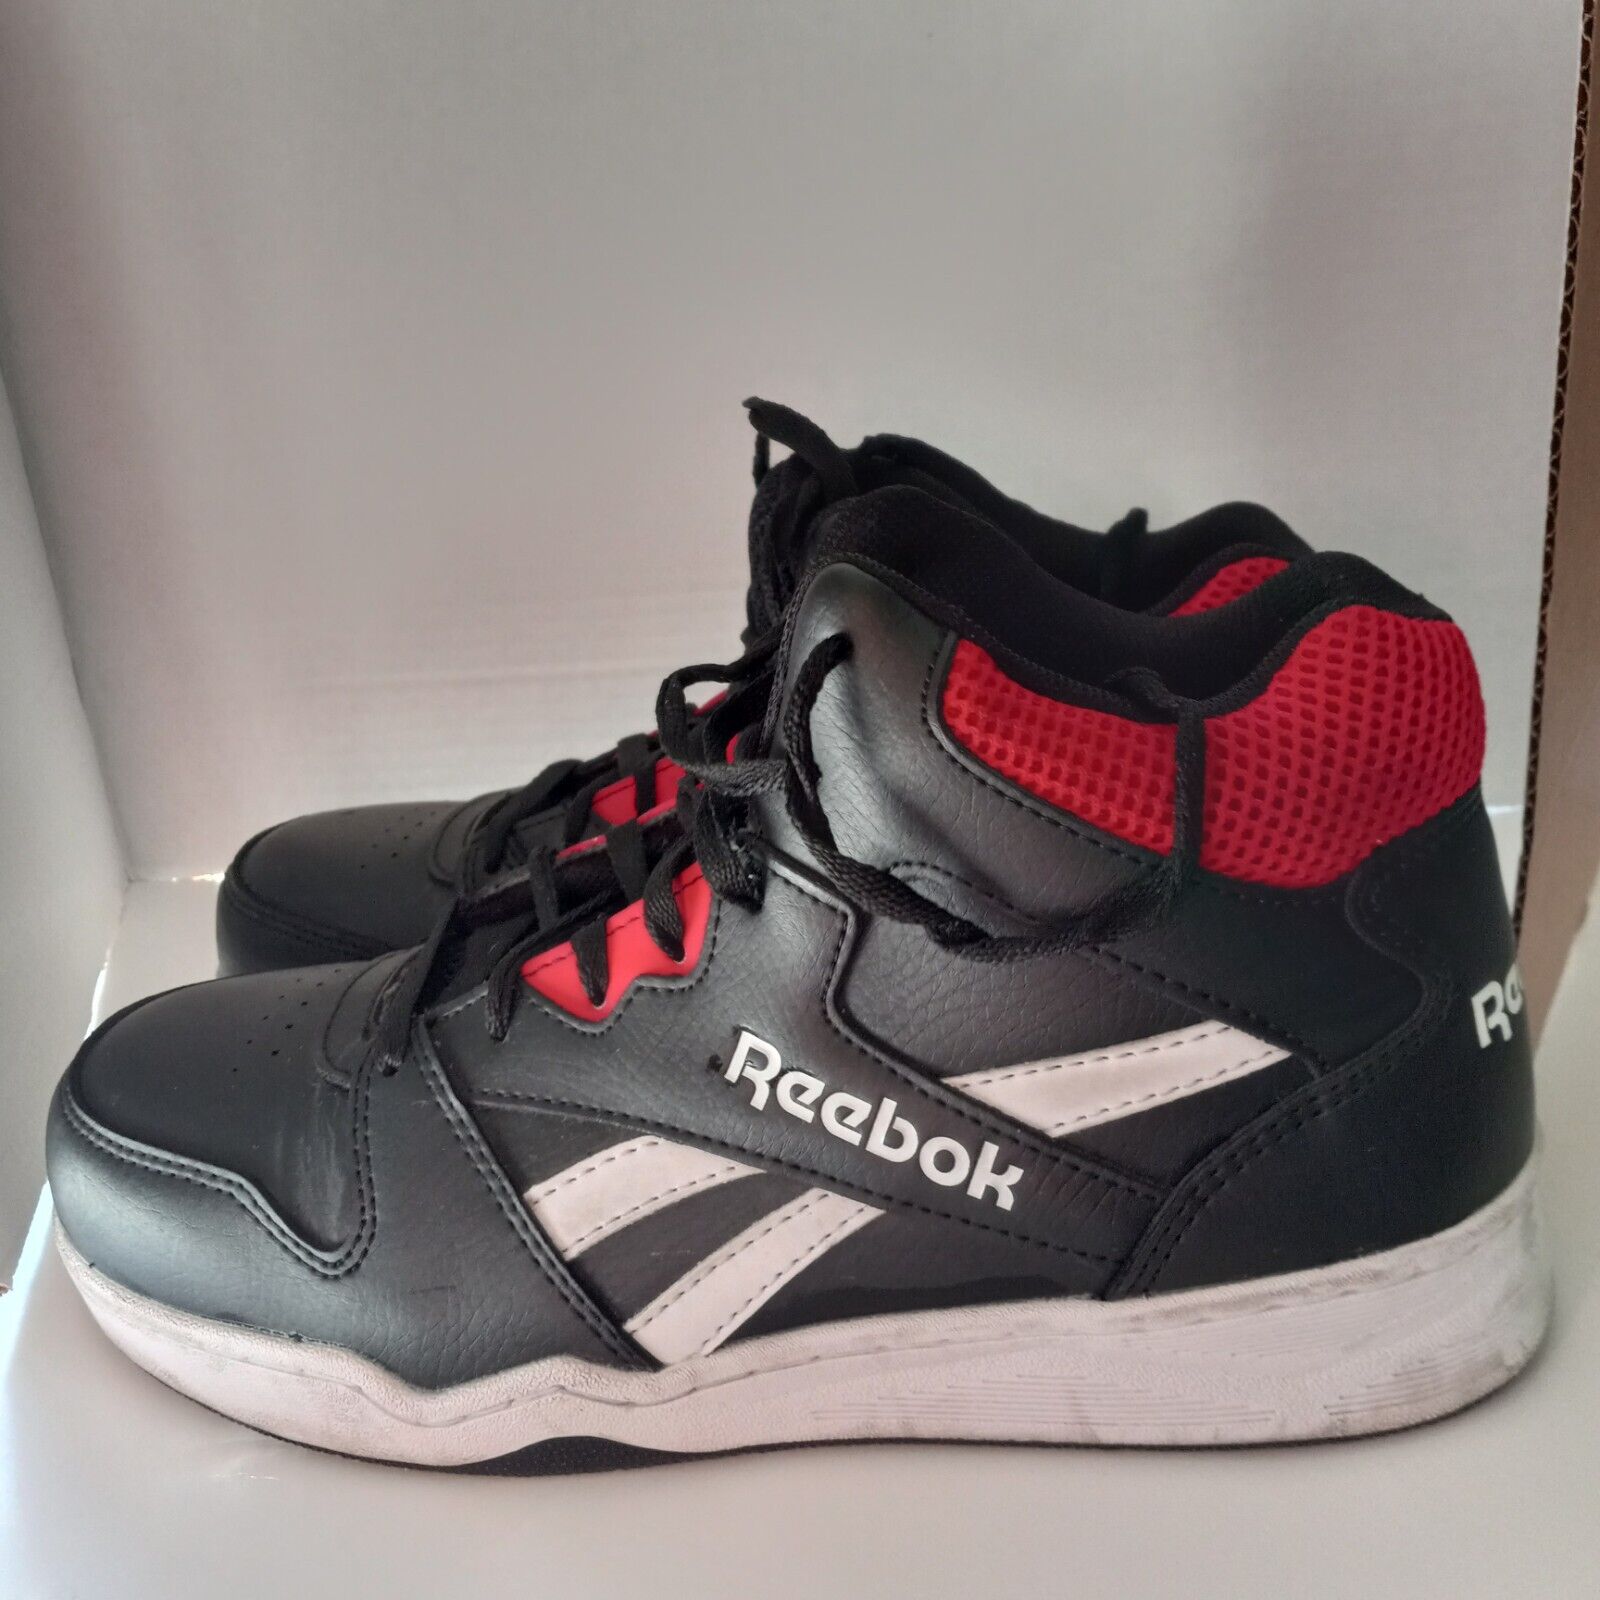 Reebok Memory Tech Steel Toe Work Shoe Boot Sneaker Mens 9 Red Black Leather